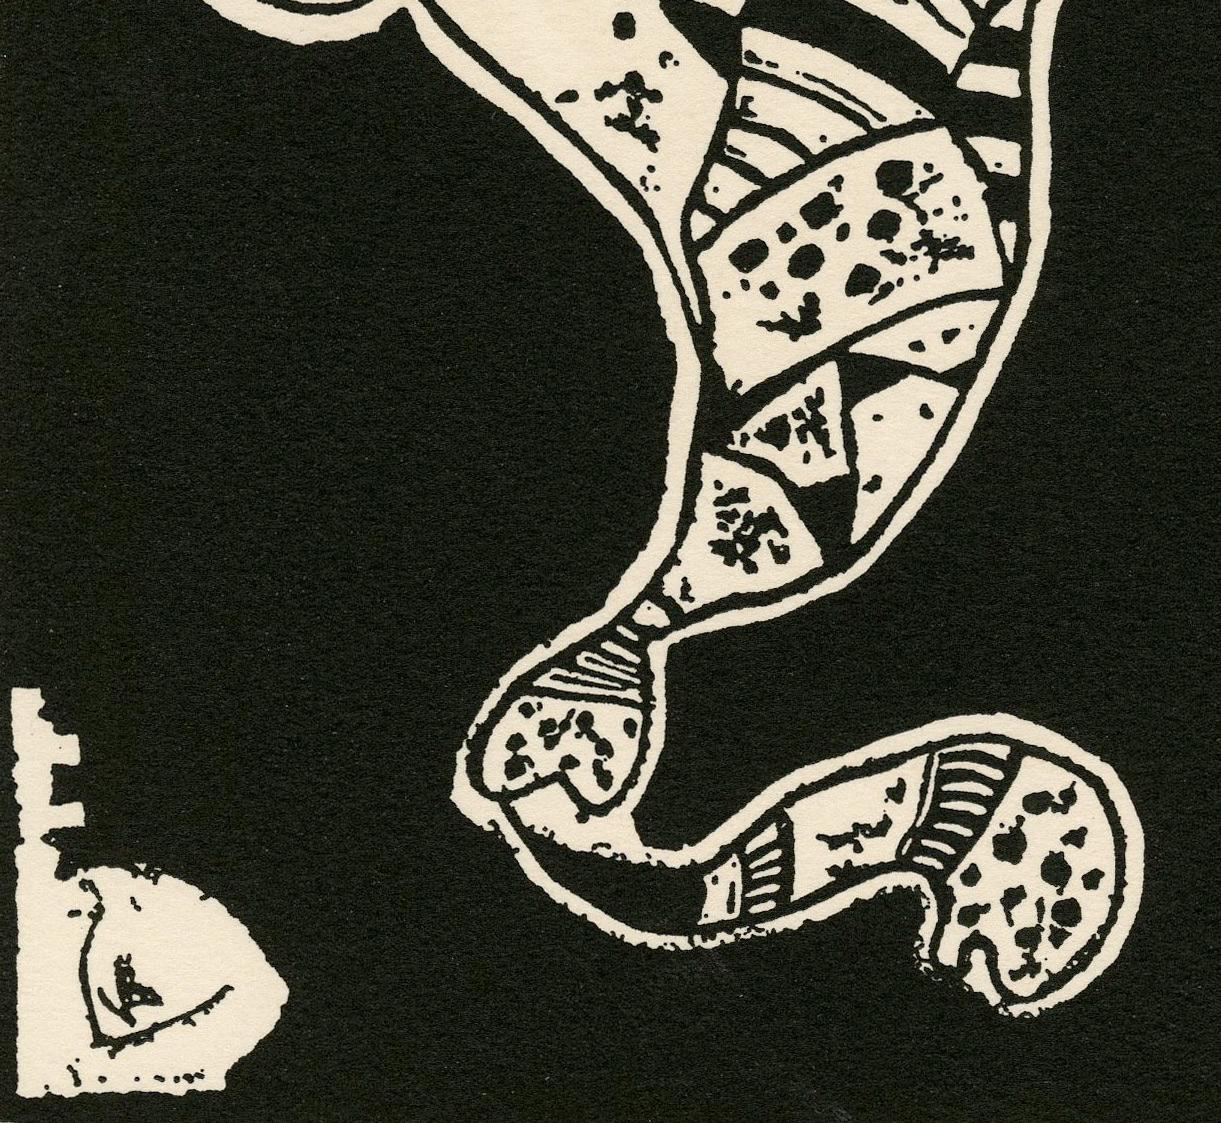 Tafel 12
Von: 10 Origi, 1942
Signiert im Block mit den Initialen des Künstlers unten links (gedruckt)
Von: 10 Herkunft
Nicht aus der Erstausgabe 100, erschienen im Allianz-Verlag, Zürich, 1942
Aus der Ausgabe von 1975, veröffentlicht in 